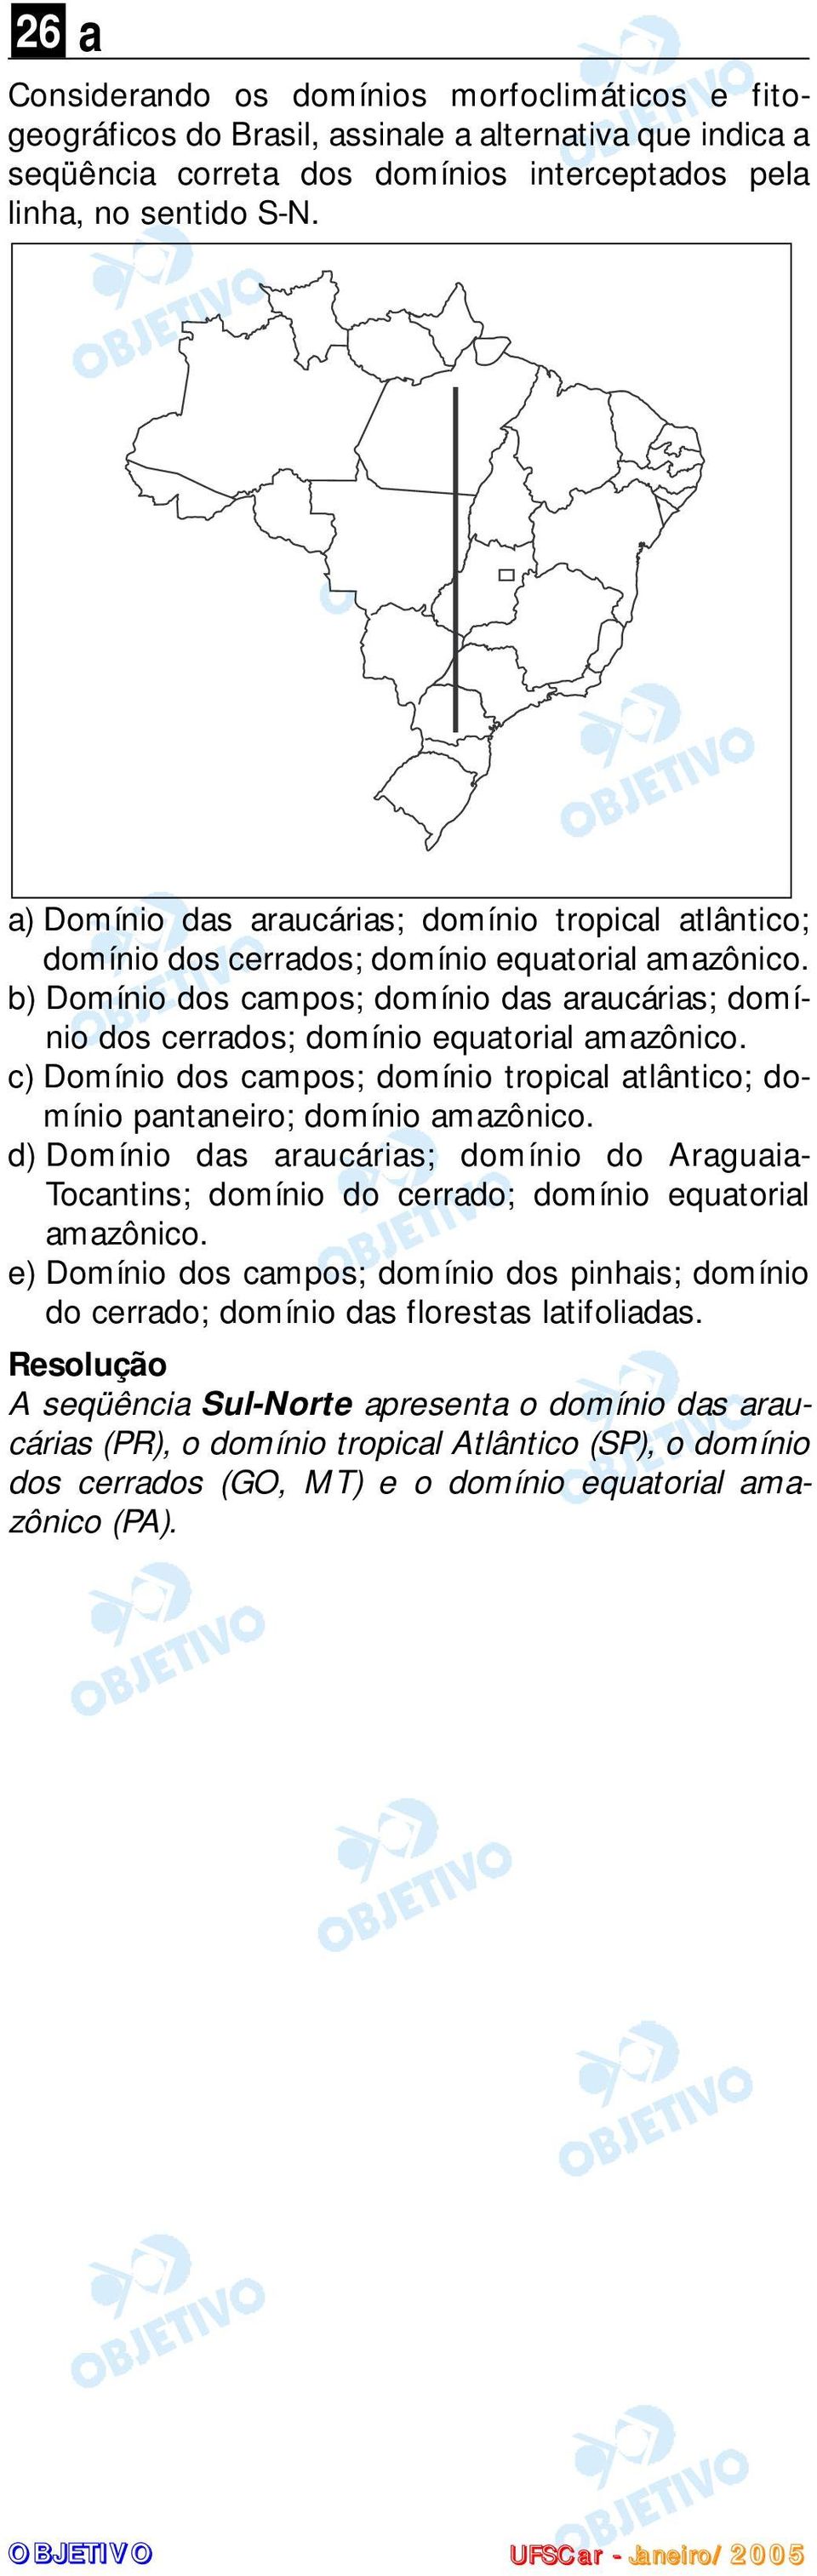 b) Domínio dos campos; domínio das araucárias; domínio dos cerrados; domínio equatorial amazônico. c) Domínio dos campos; domínio tropical atlântico; domínio pantaneiro; domínio amazônico.